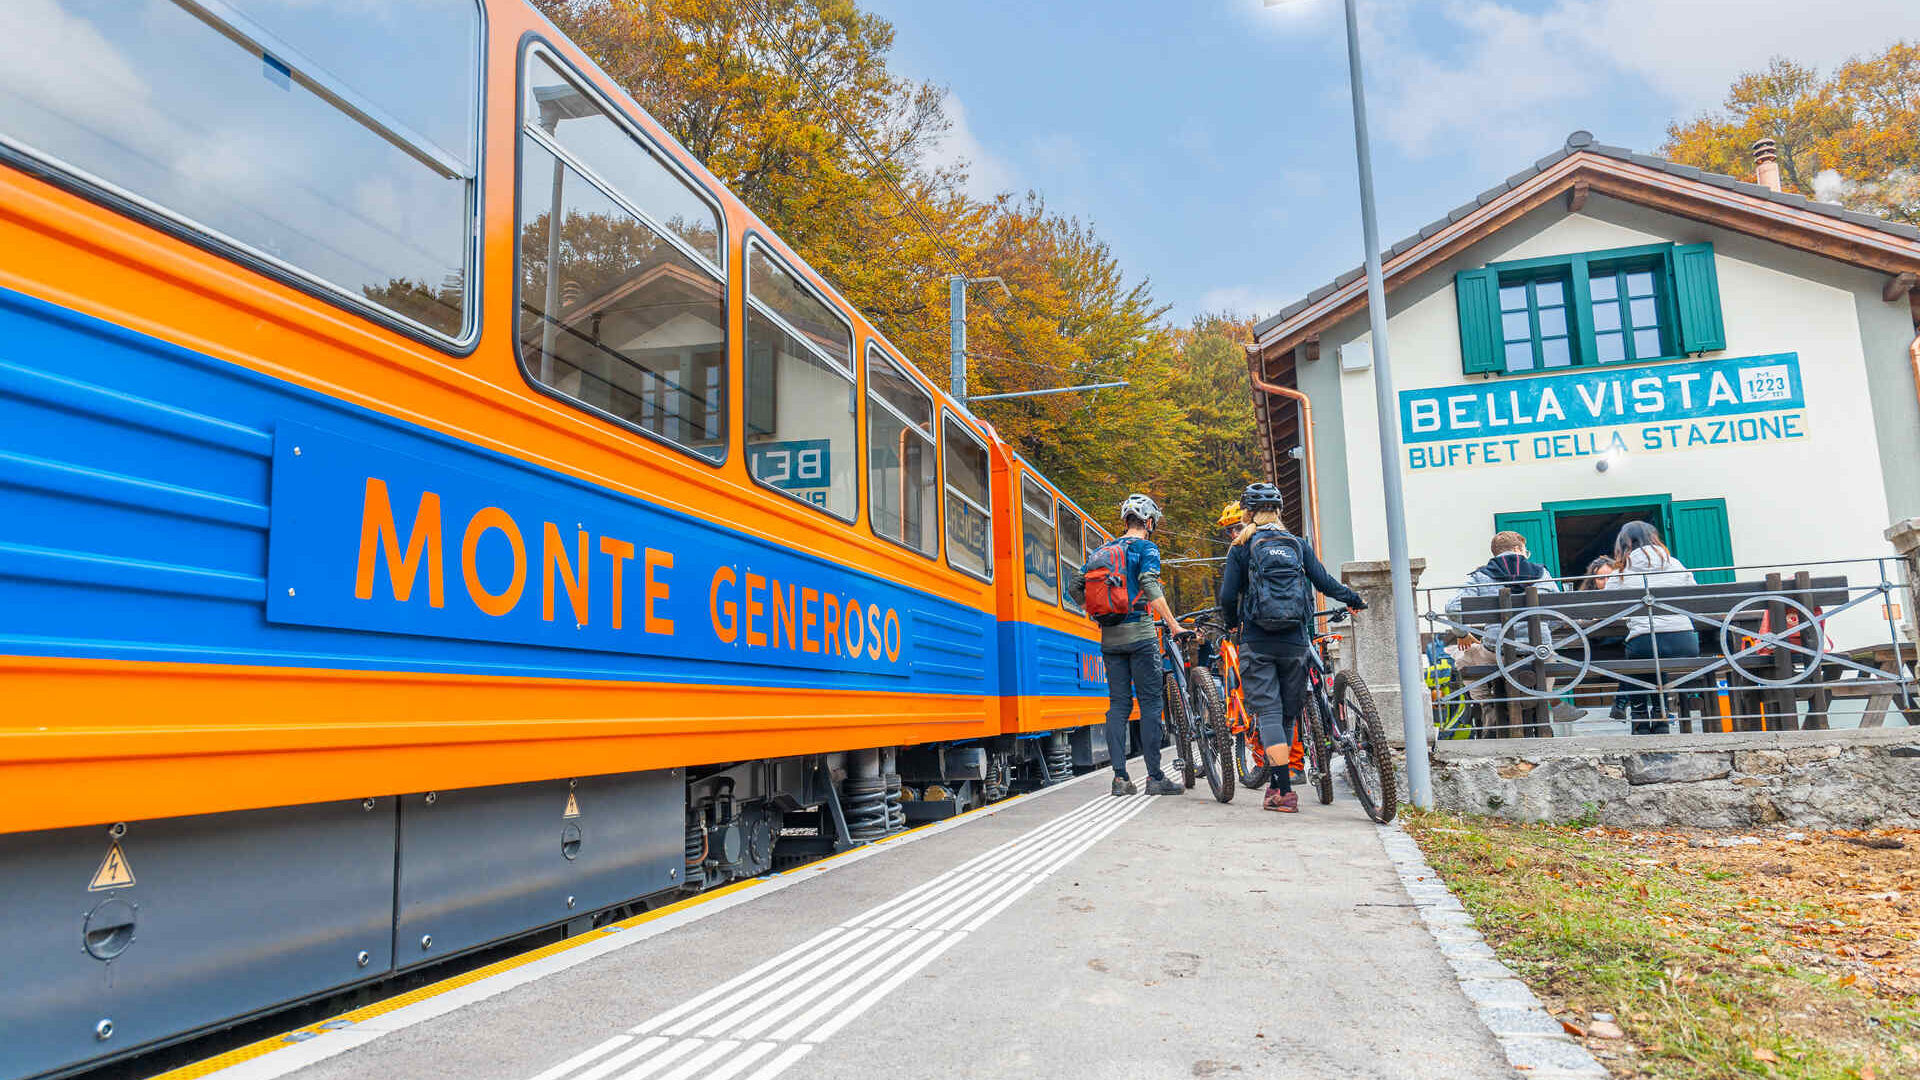 Monte Generoso: ตู้รถไฟสีน้ำเงินและสีส้มสุดคลาสสิก